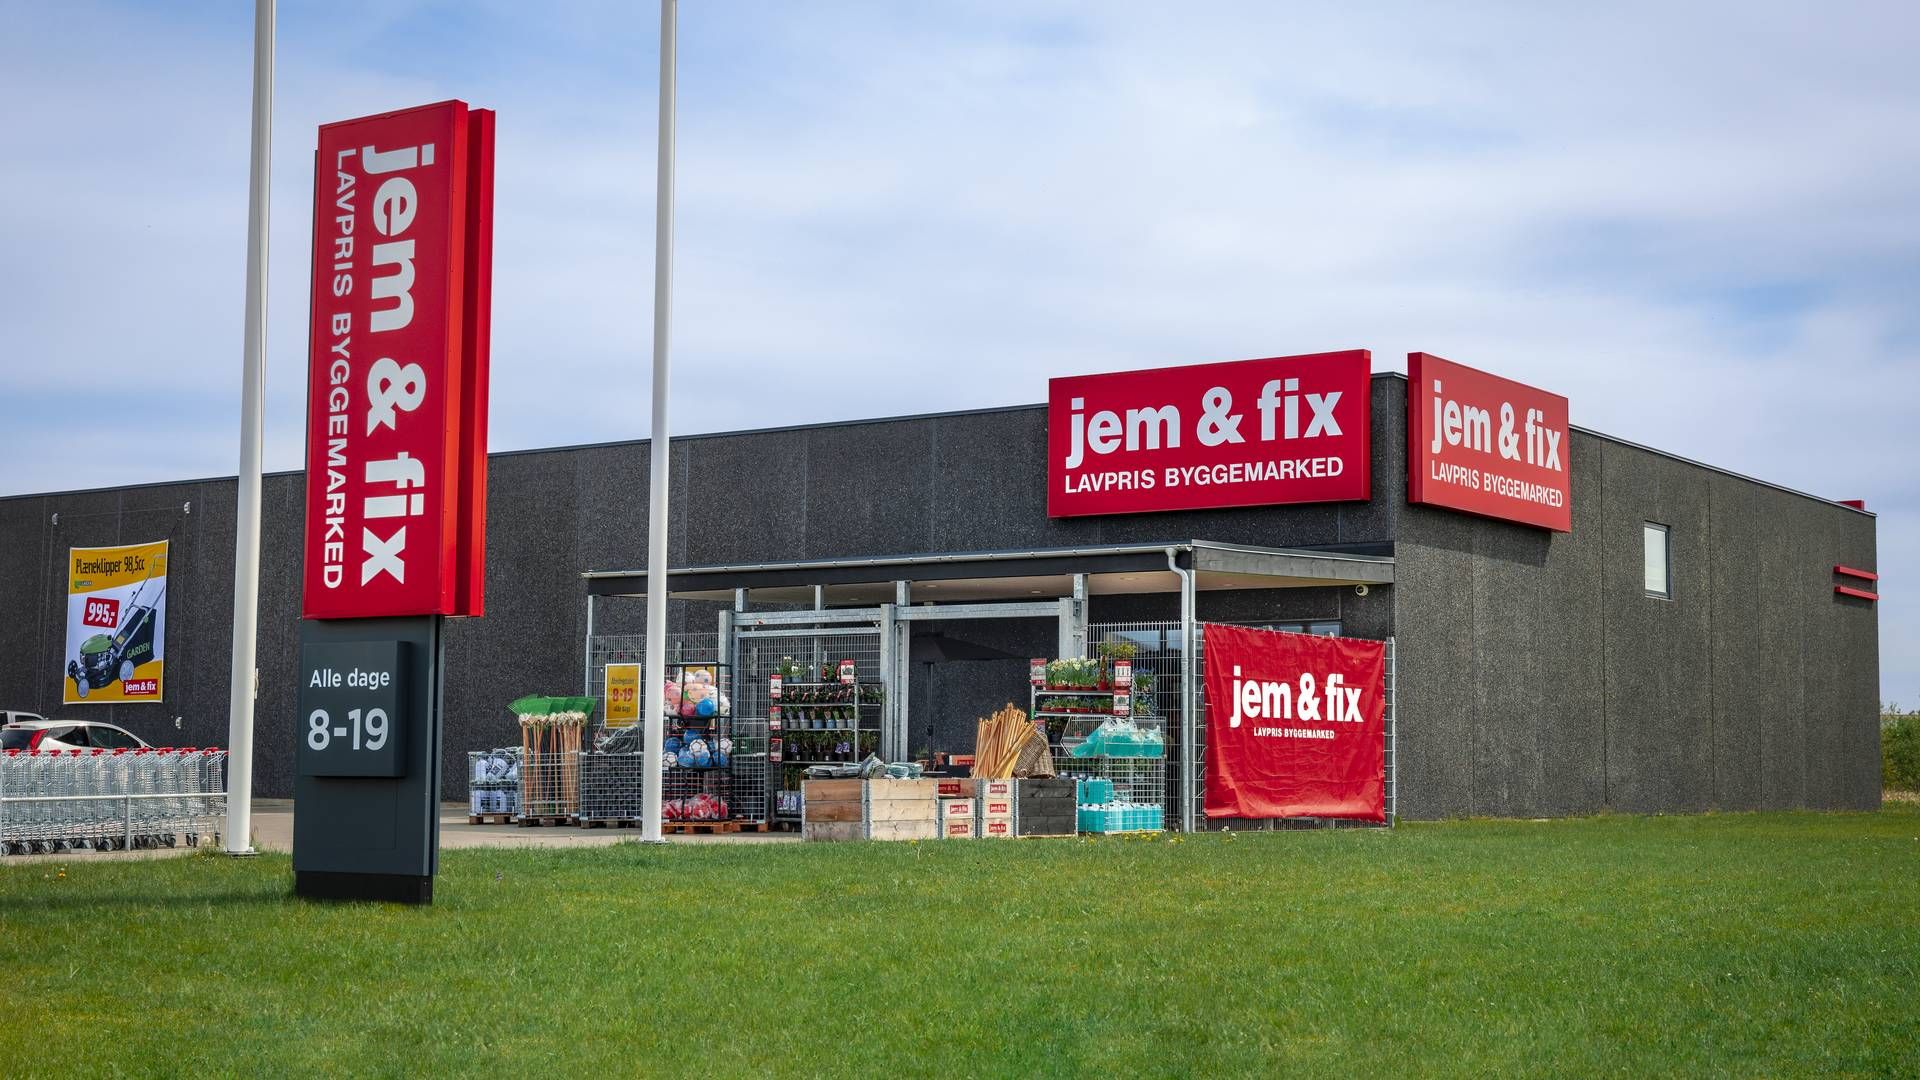 Jem & fix er ejet af Harald Nyborg-koncernen, der blev stiftet af Erling Daell. | Foto: Alex Kristensen/AxK/Pr